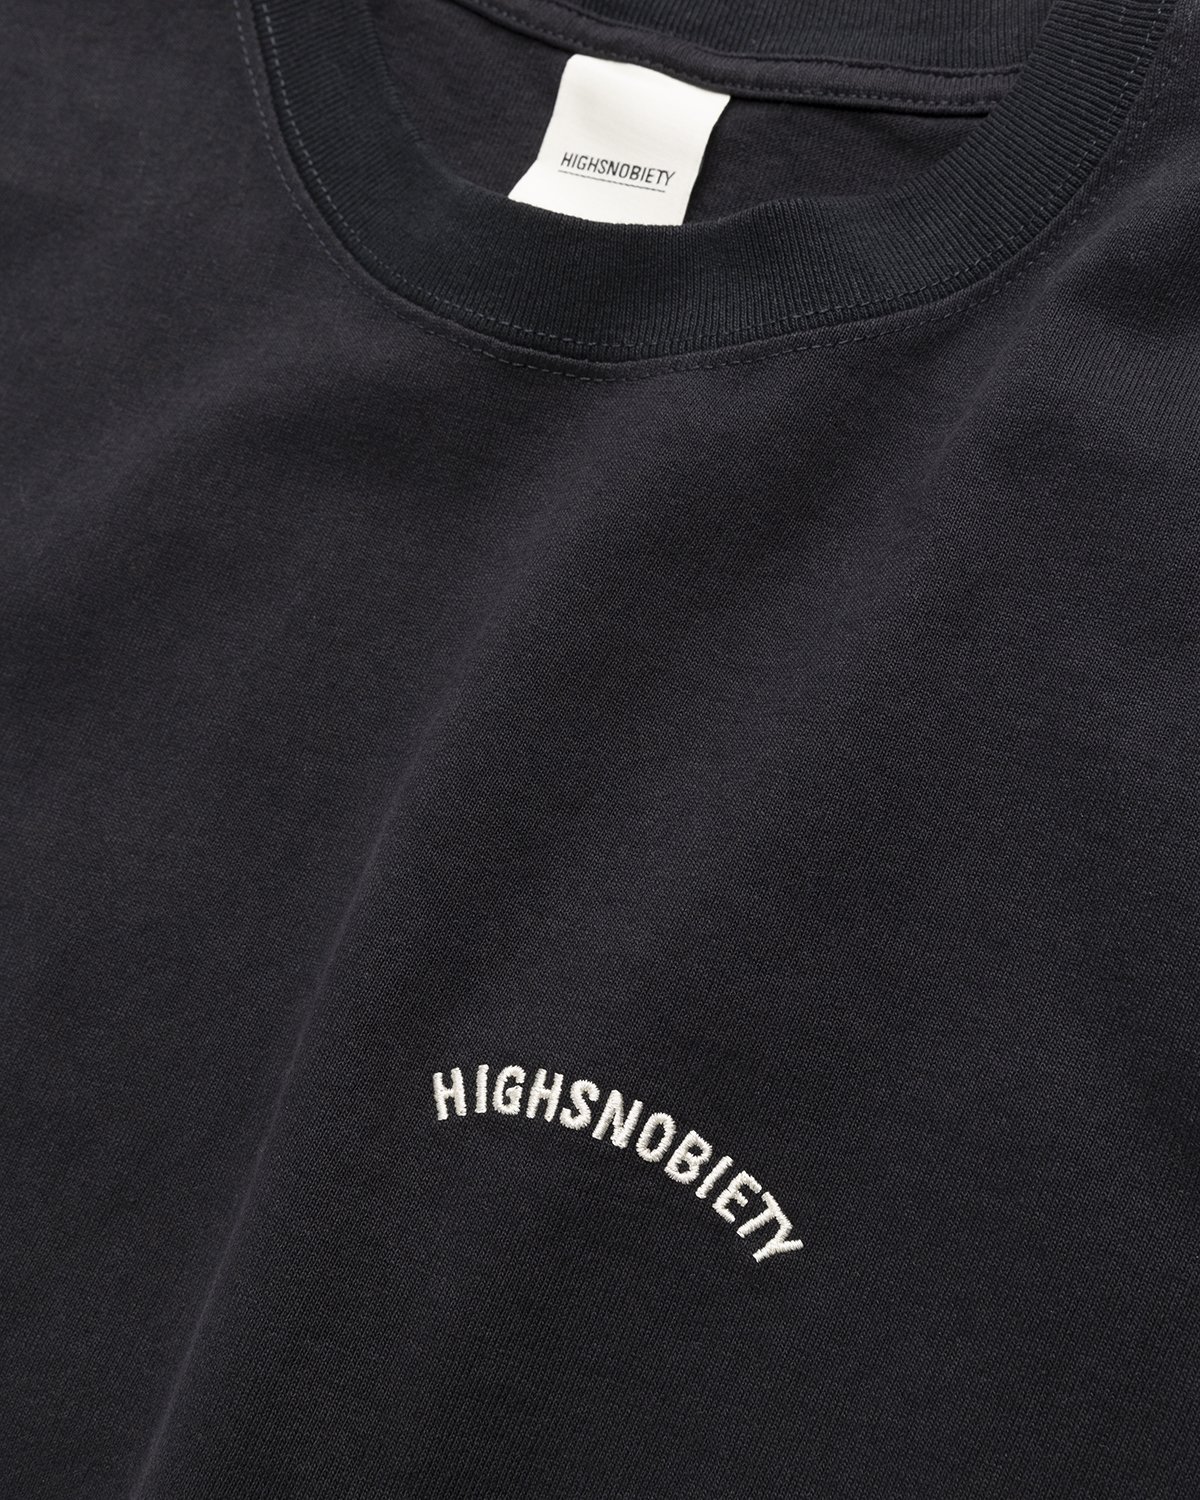 Highsnobiety - Heavy Logo Staples T-Shirt Black - Clothing - Black - Image 3